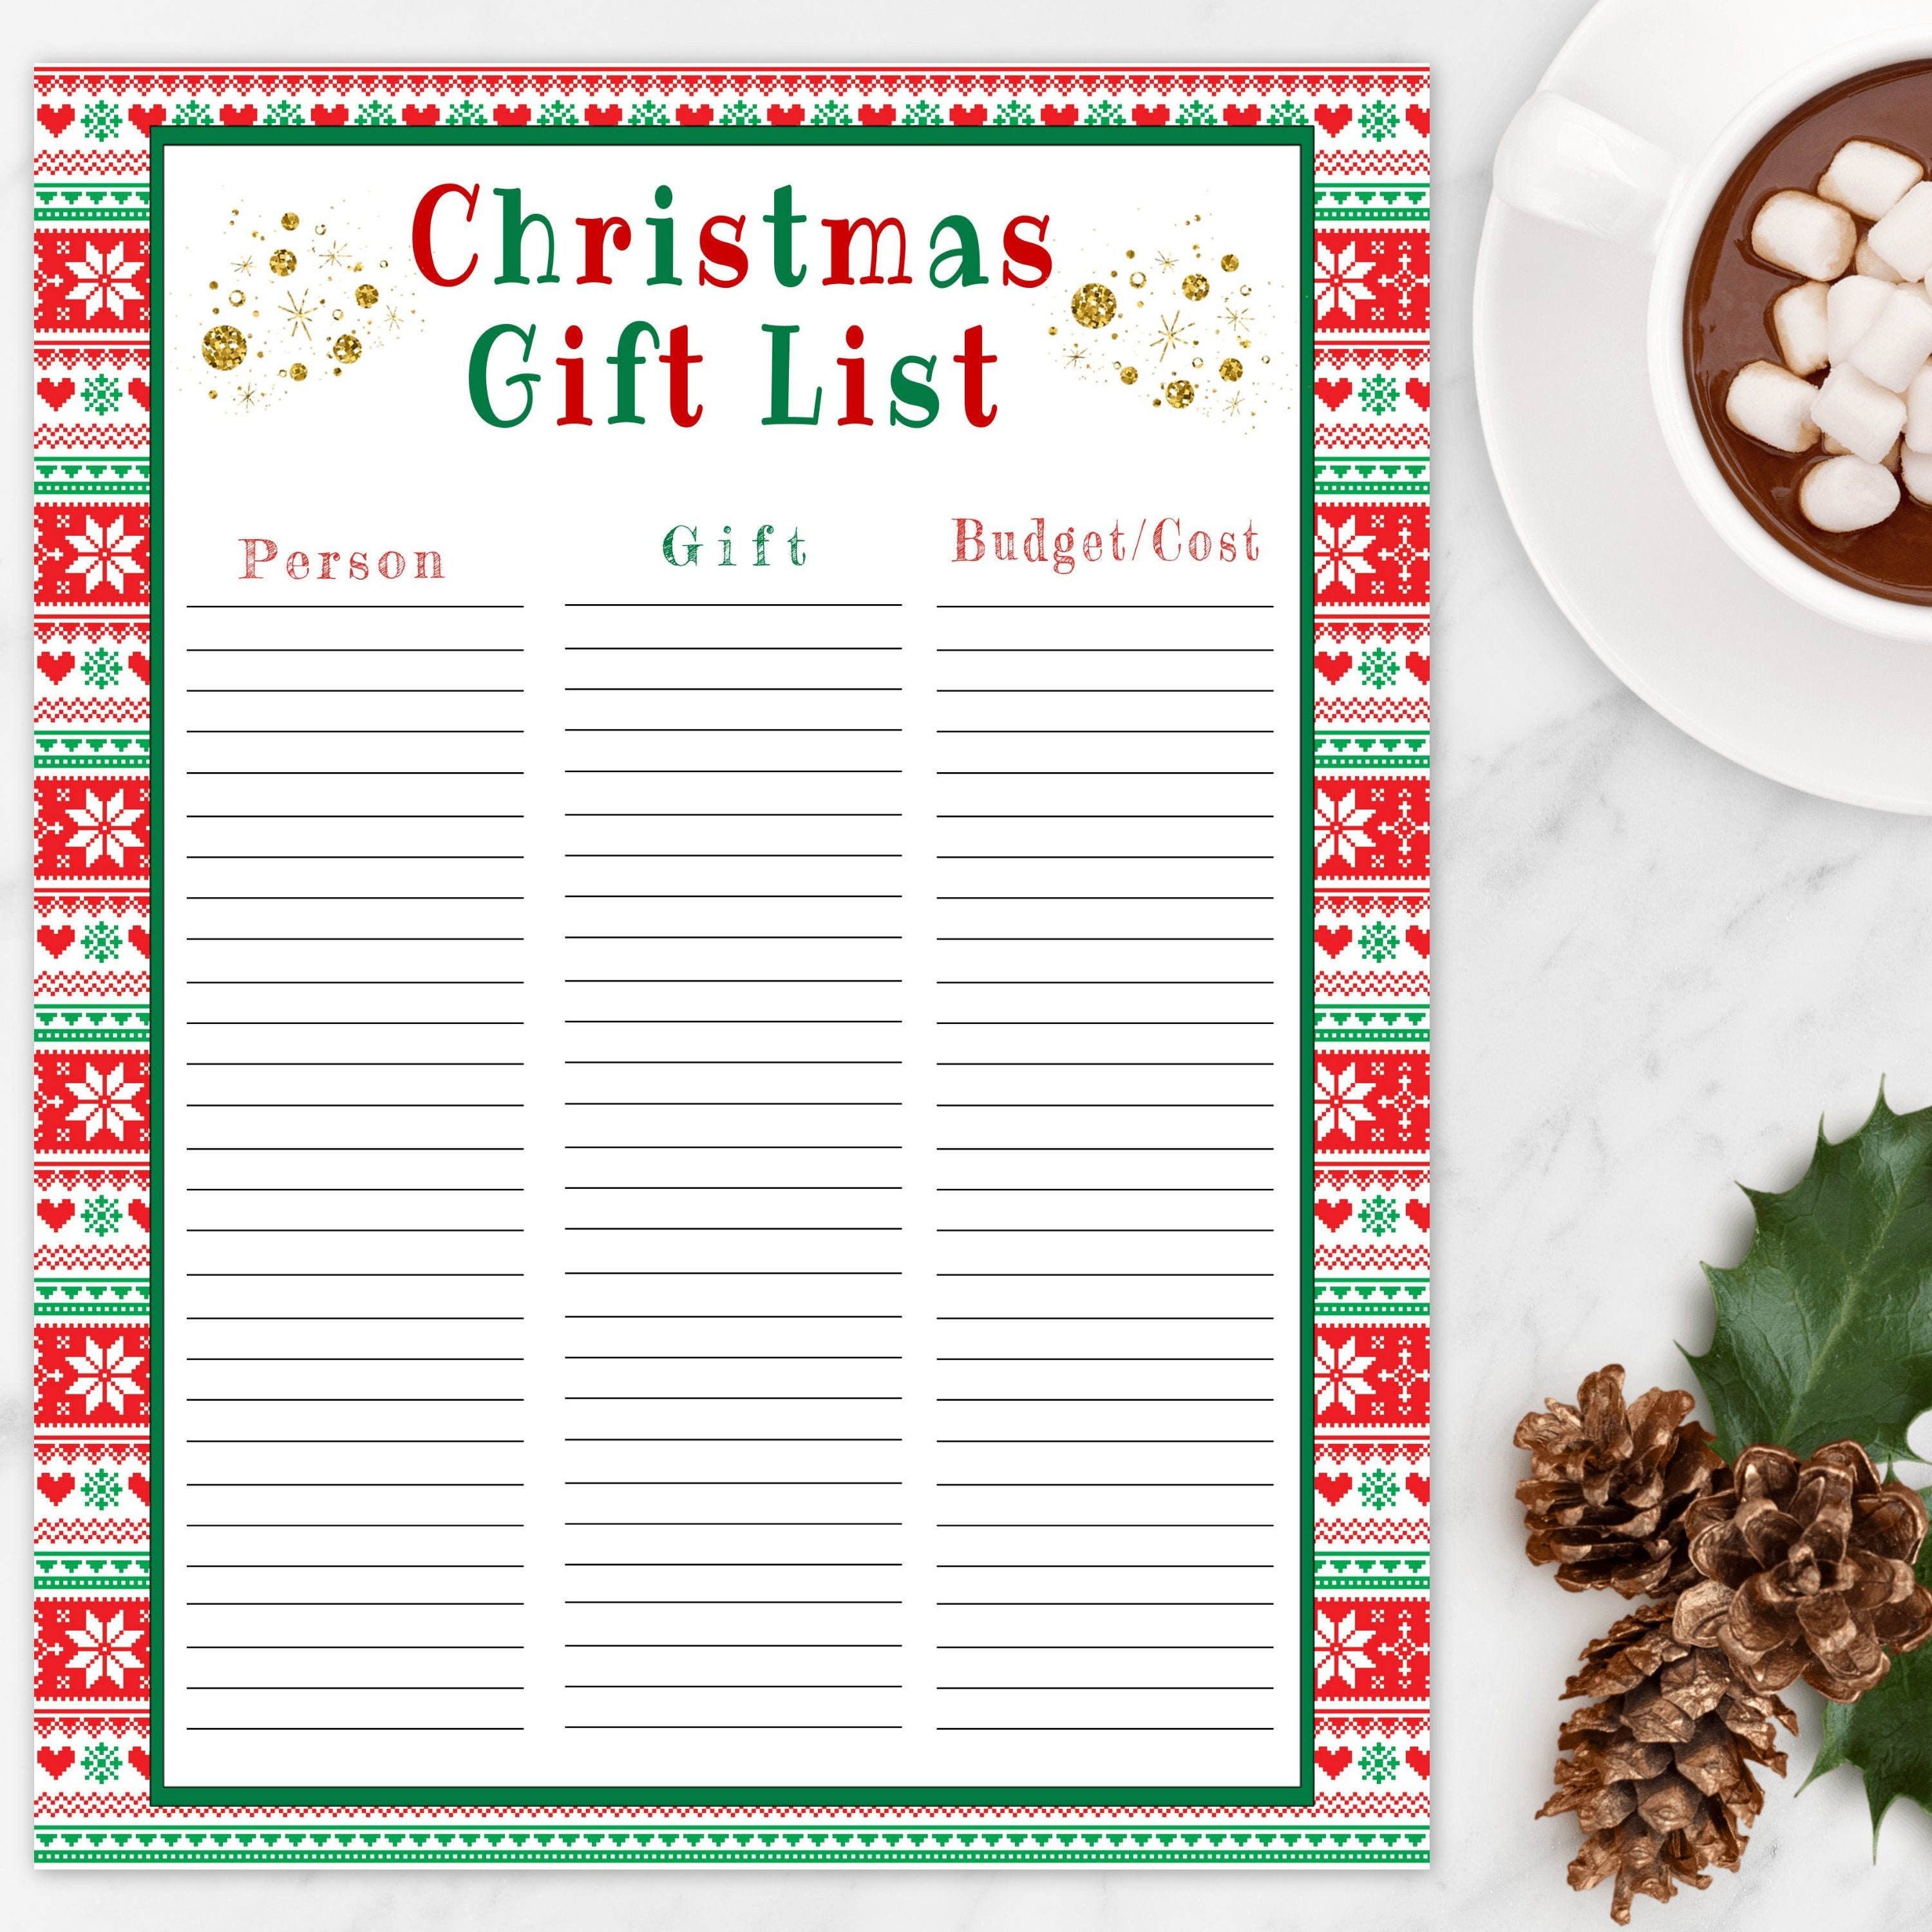 christmas-gift-list-printable-template-editable-holiday-gift-etsy